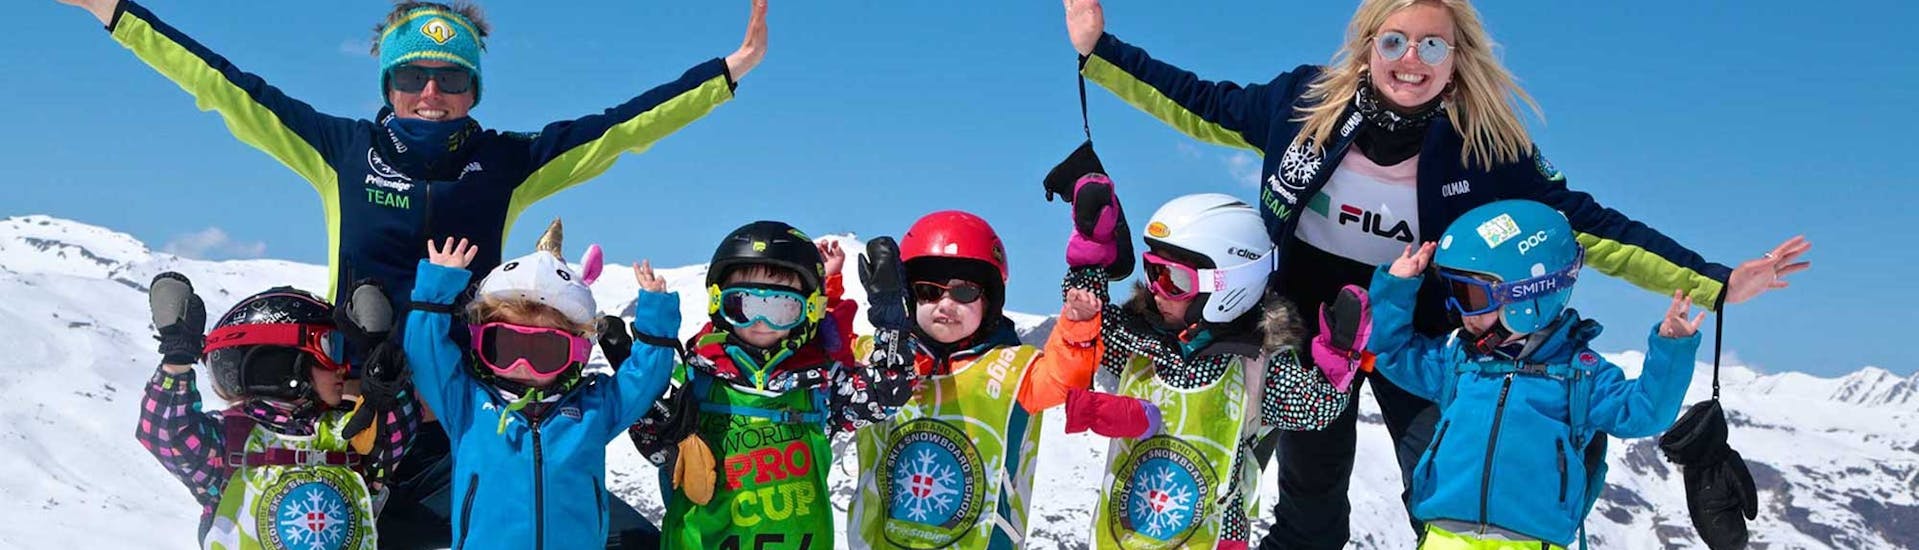 Lezioni di sci per bambini a partire da 5 anni per principianti.